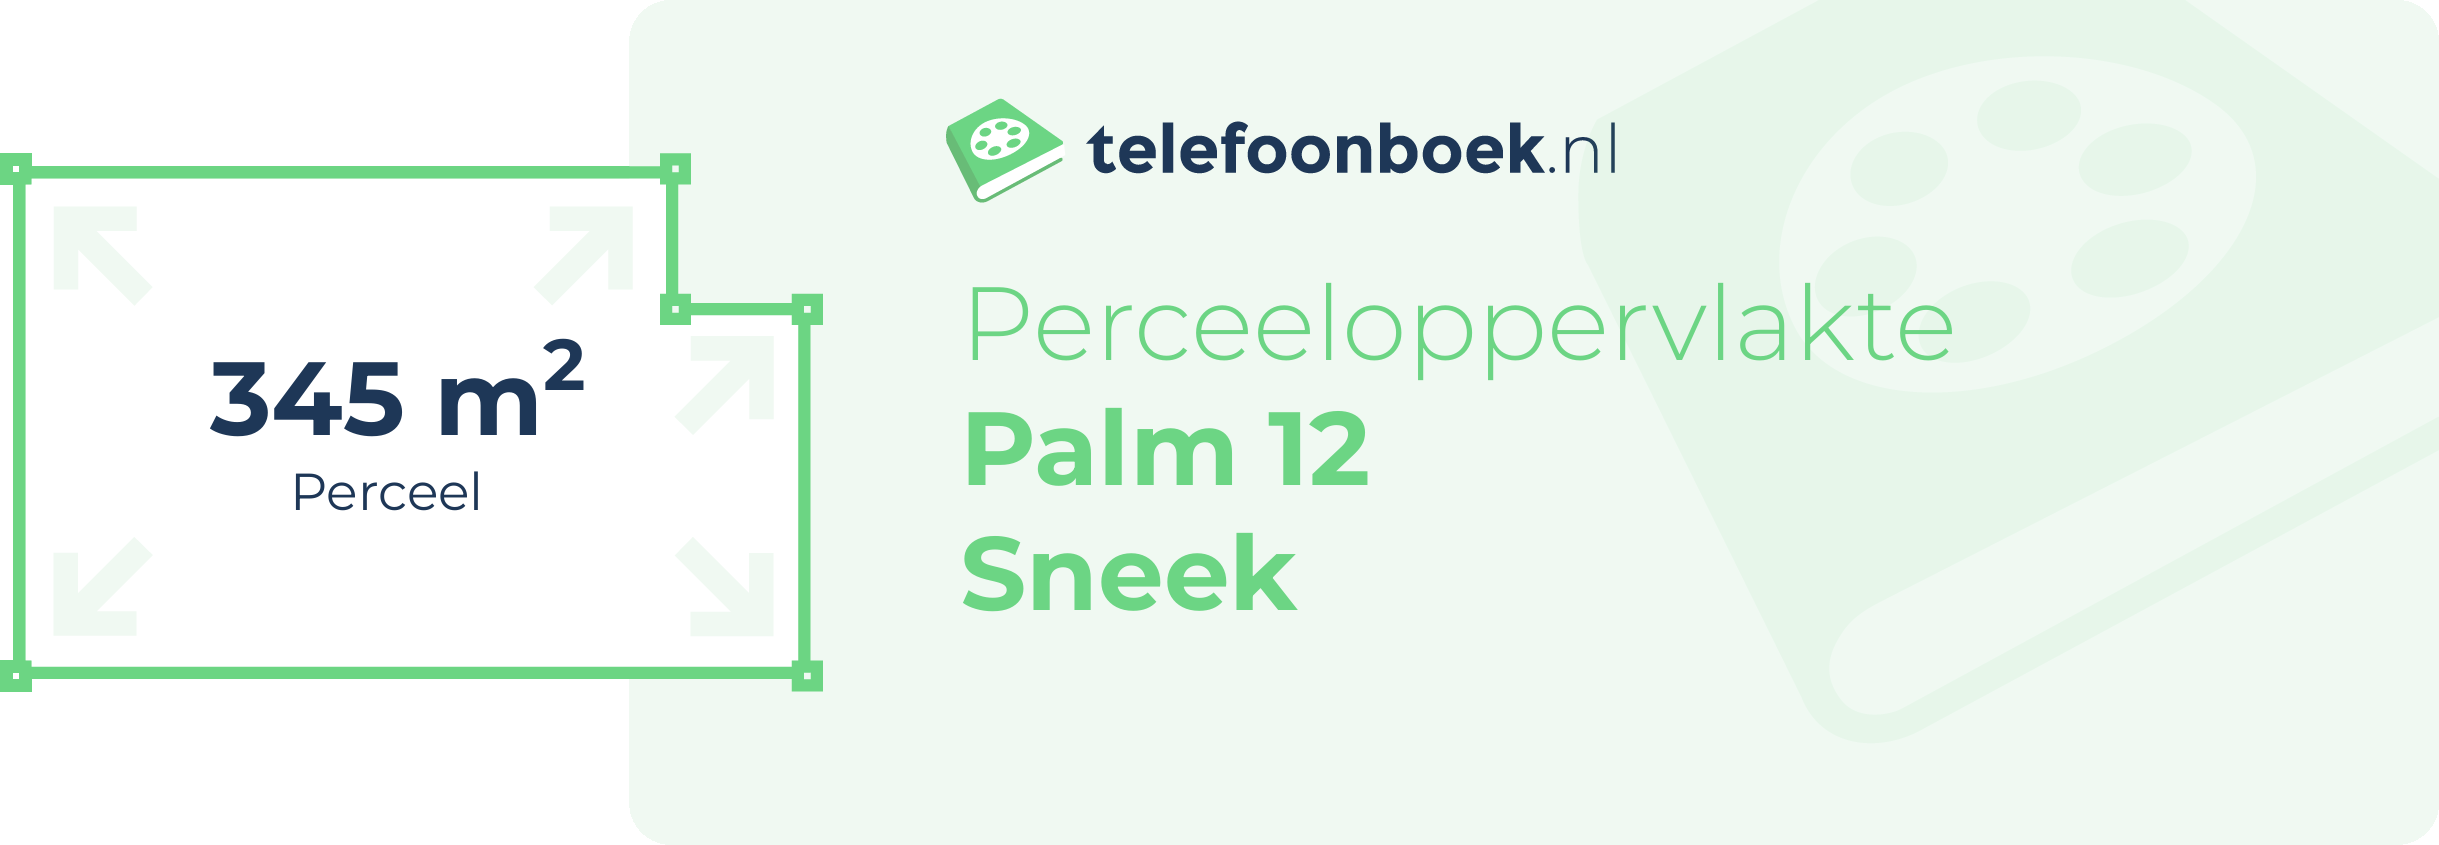 Perceeloppervlakte Palm 12 Sneek